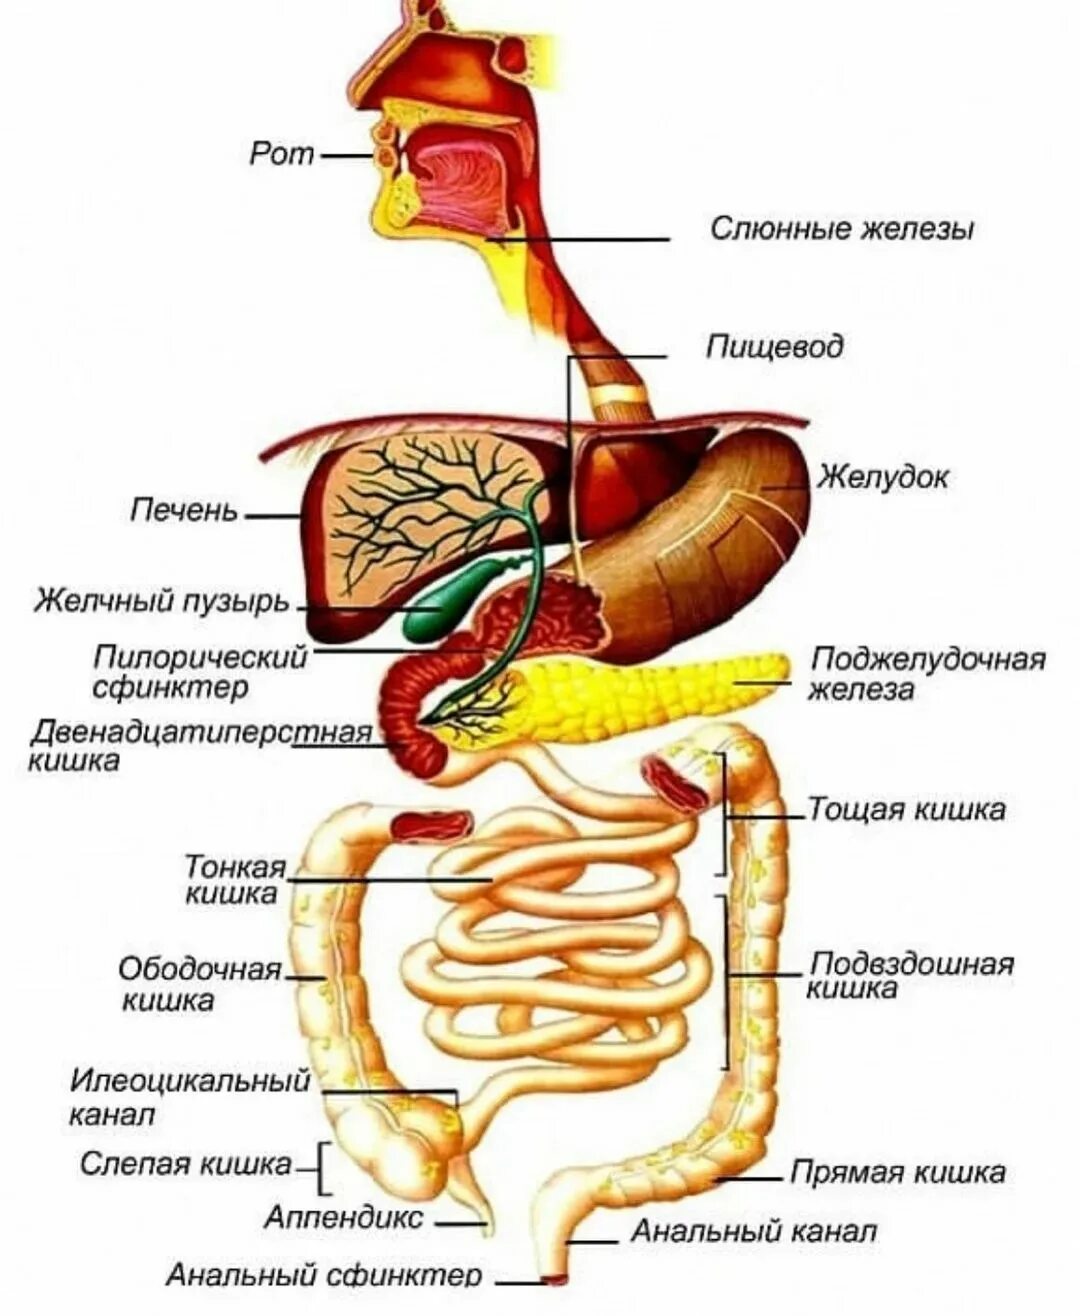 Рот пищевод кишечник. Строение желудочно-кишечного тракта. Схема желудочно-кишечного тракта. Анатомия пищеварительного тракта человека. Строение отделов желудочно-кишечного тракта.